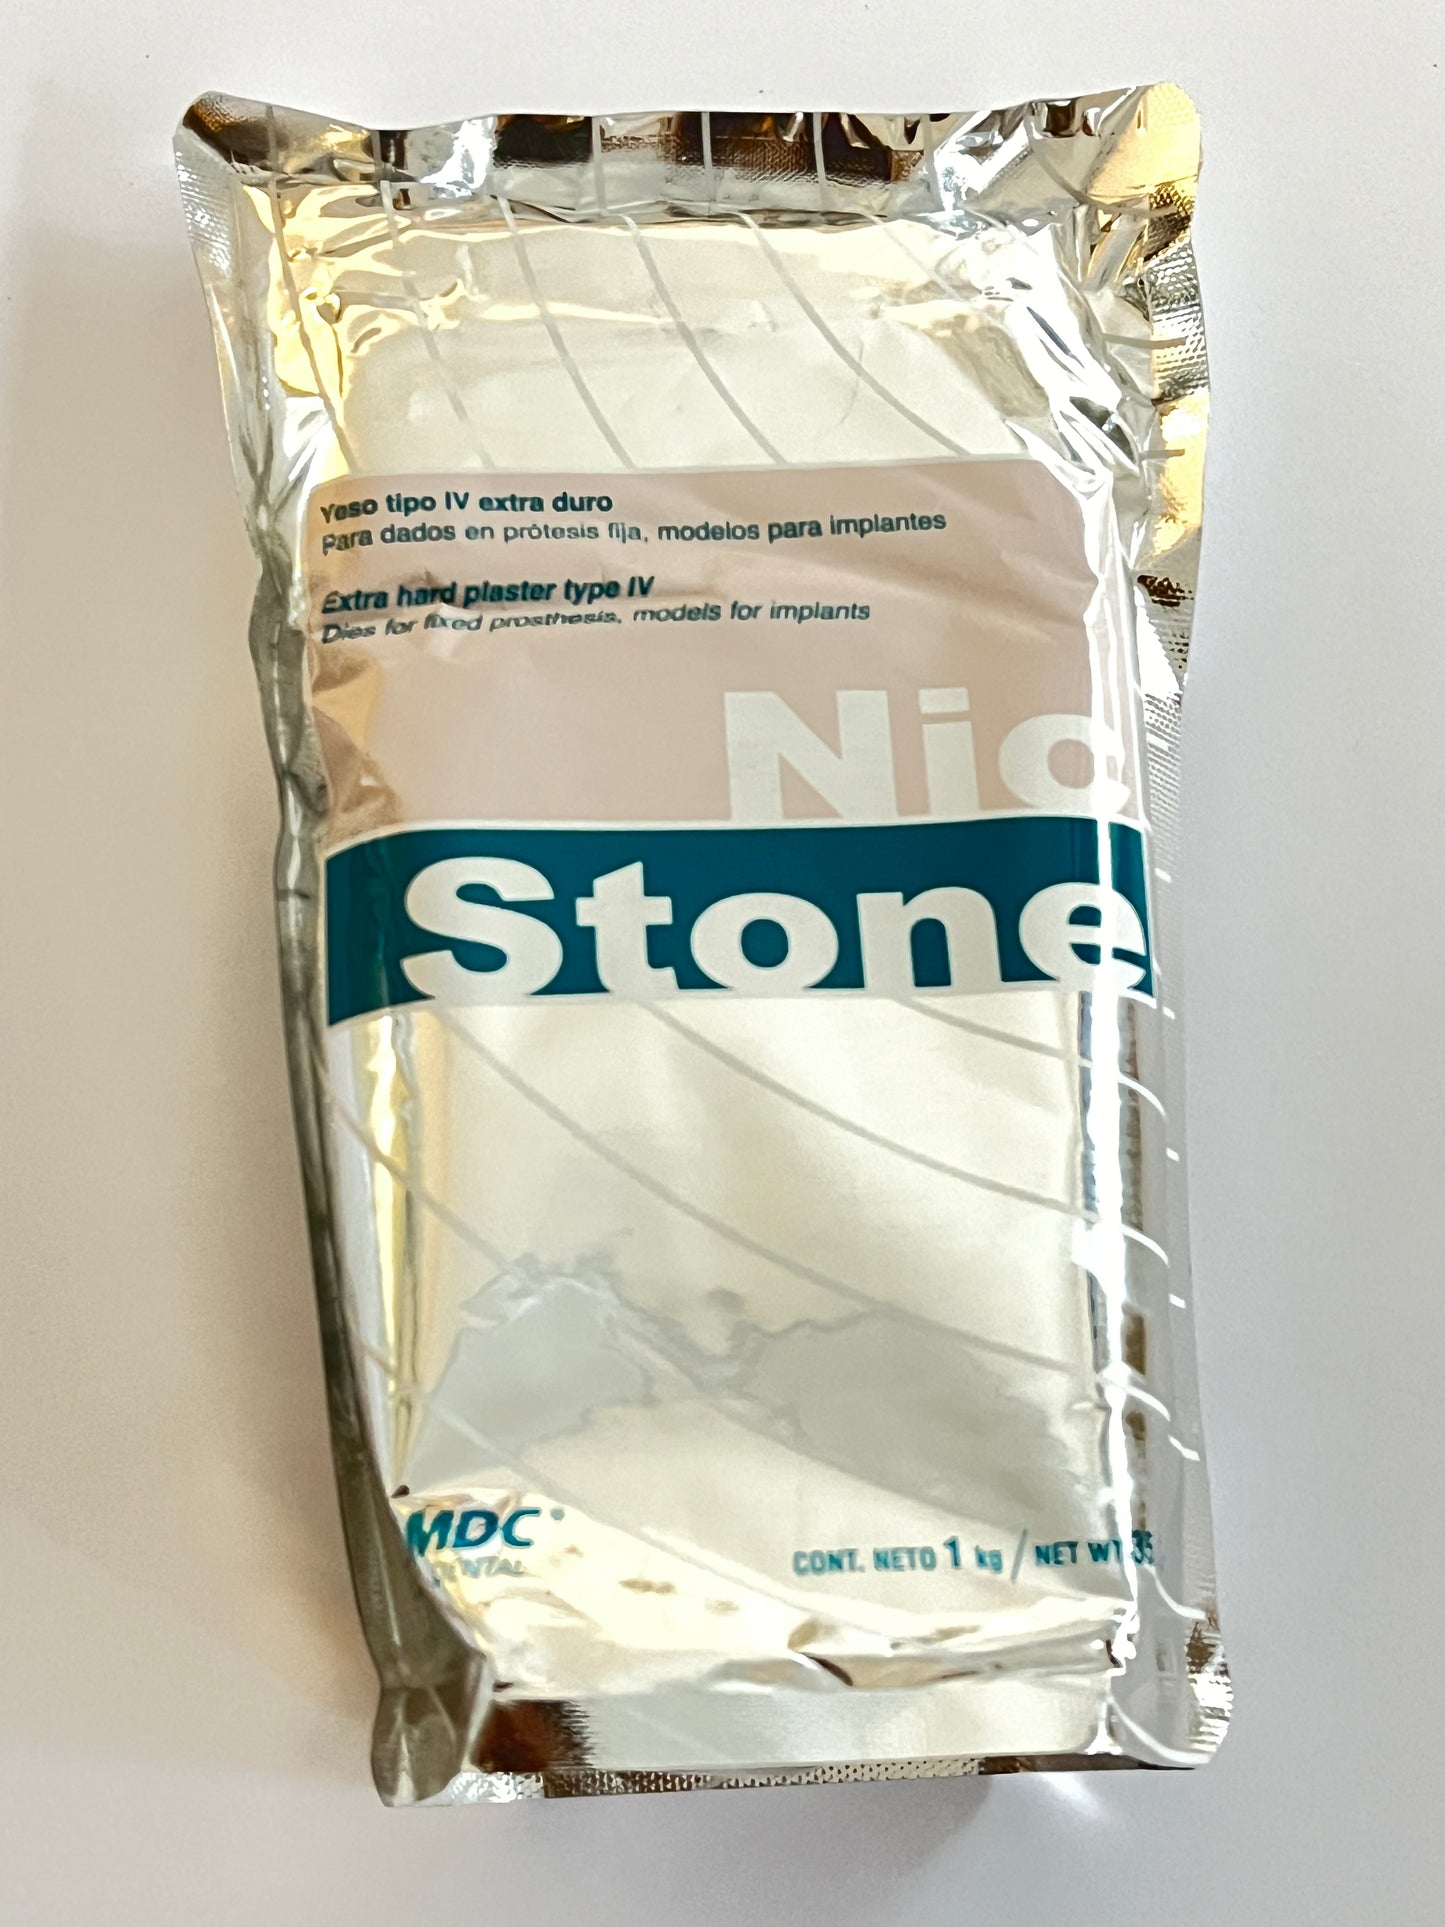 Yeso Nic stone